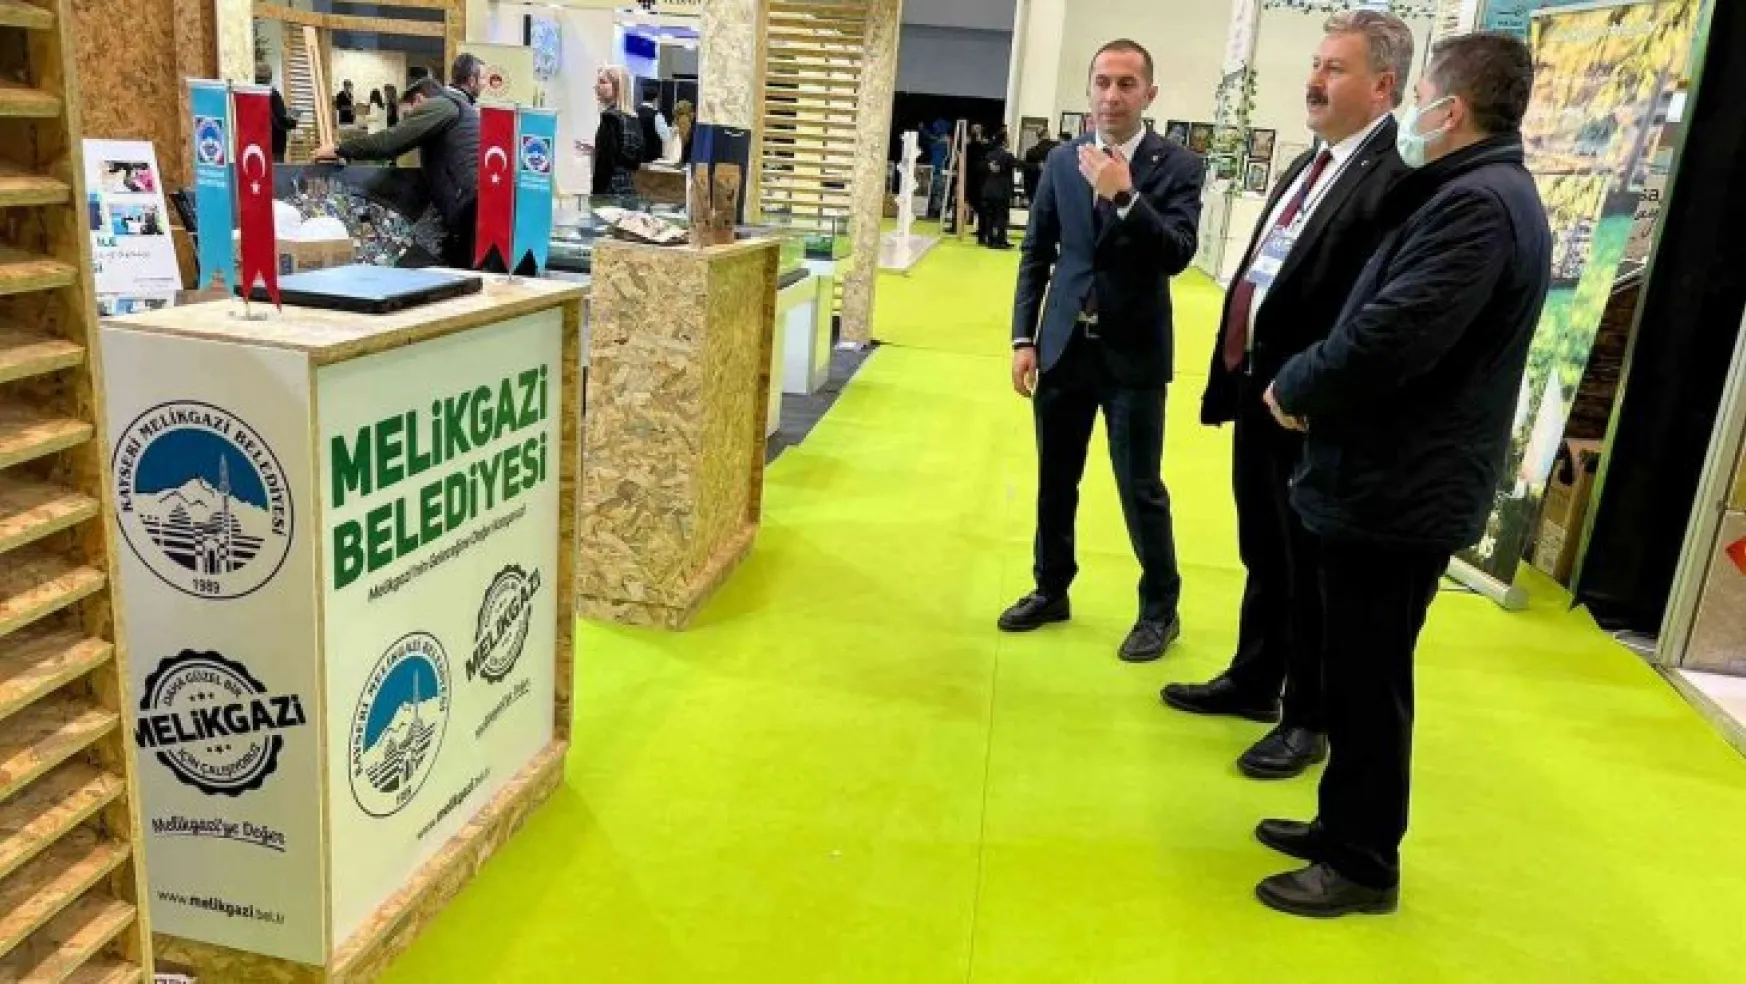 Melikgazi, iklim ve yeşil dönüşüm farkındalığı için Ankara'da